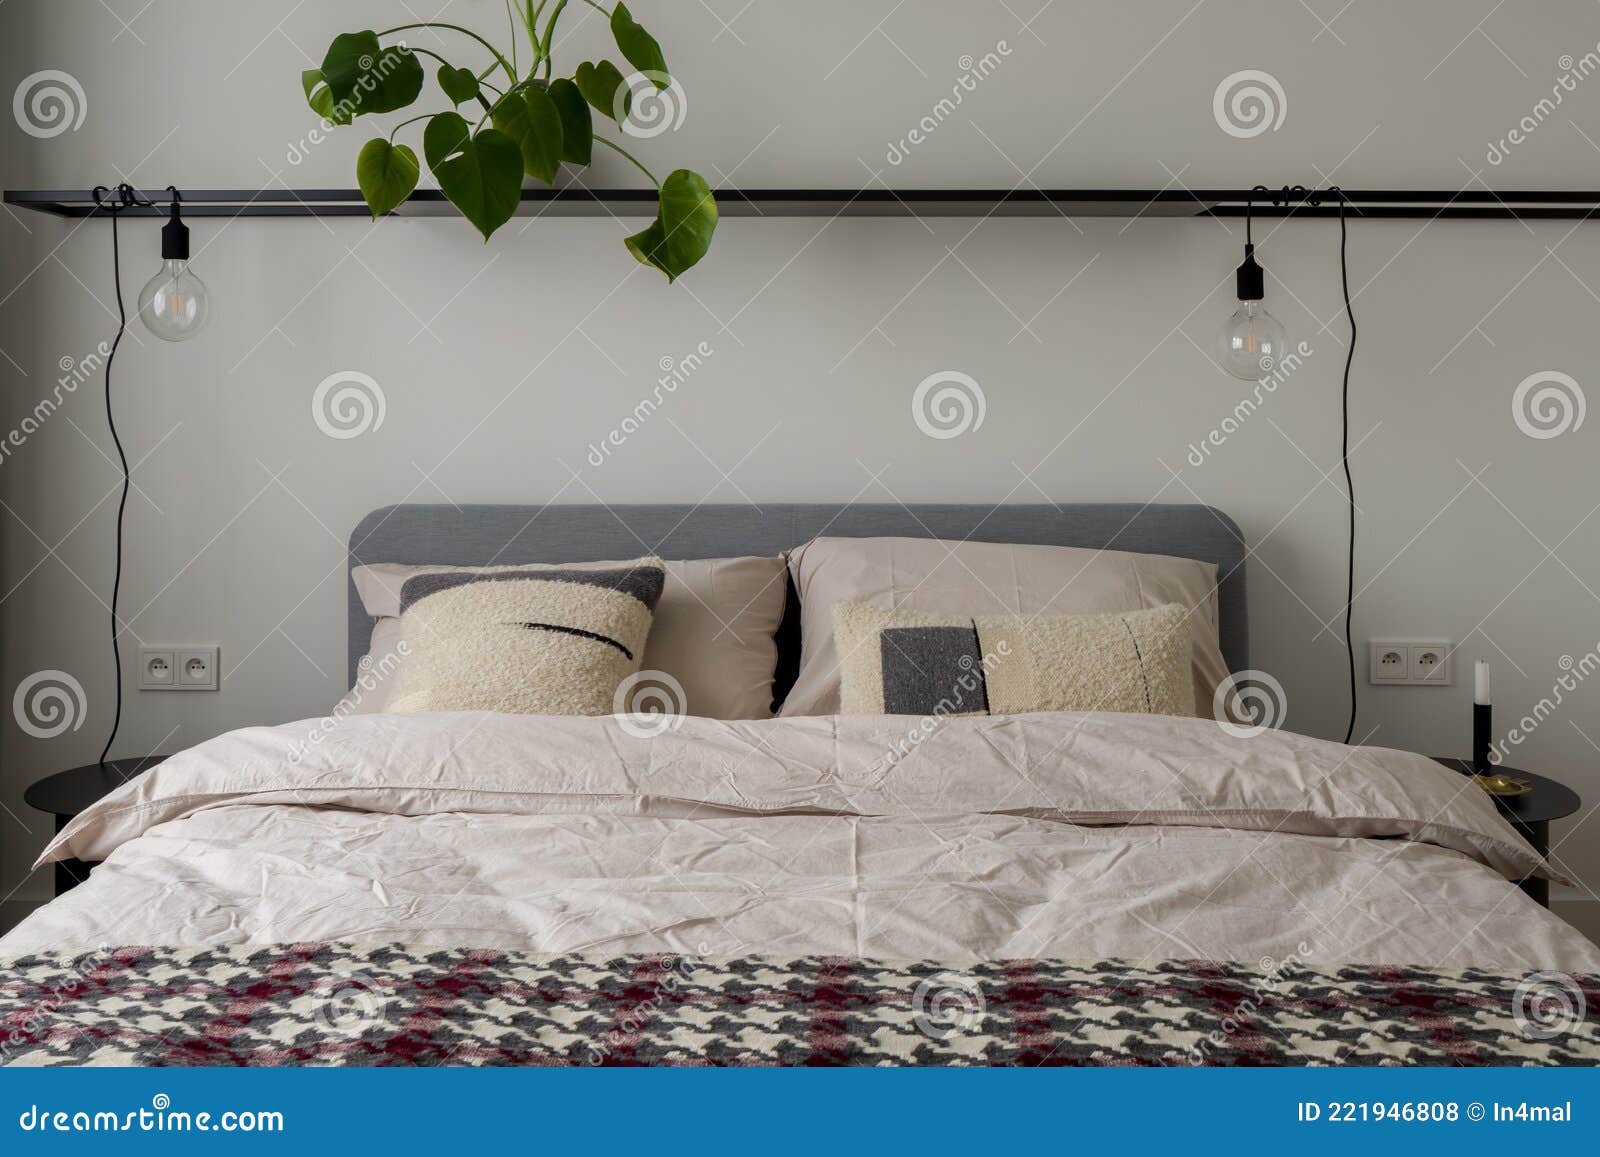 Bequemes Bett Im Einfach Eingerichteten Schlafzimmer Stockfoto ...